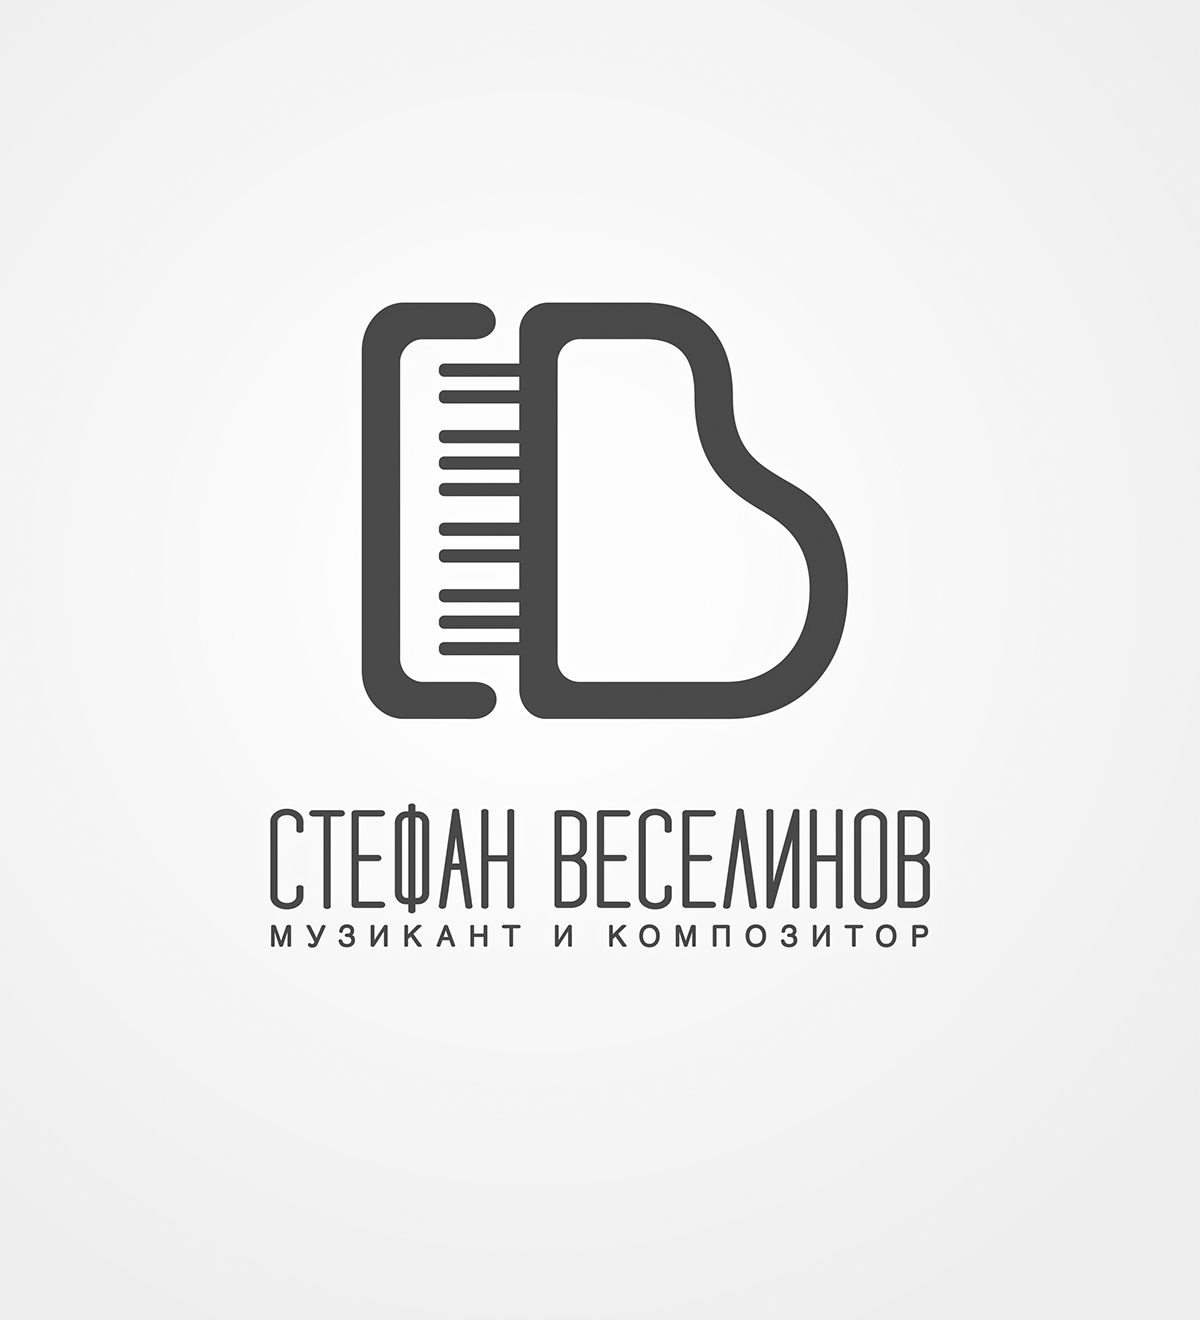 brand identity total design logo Cyrillic music Piano musician typo Composer bulgarian